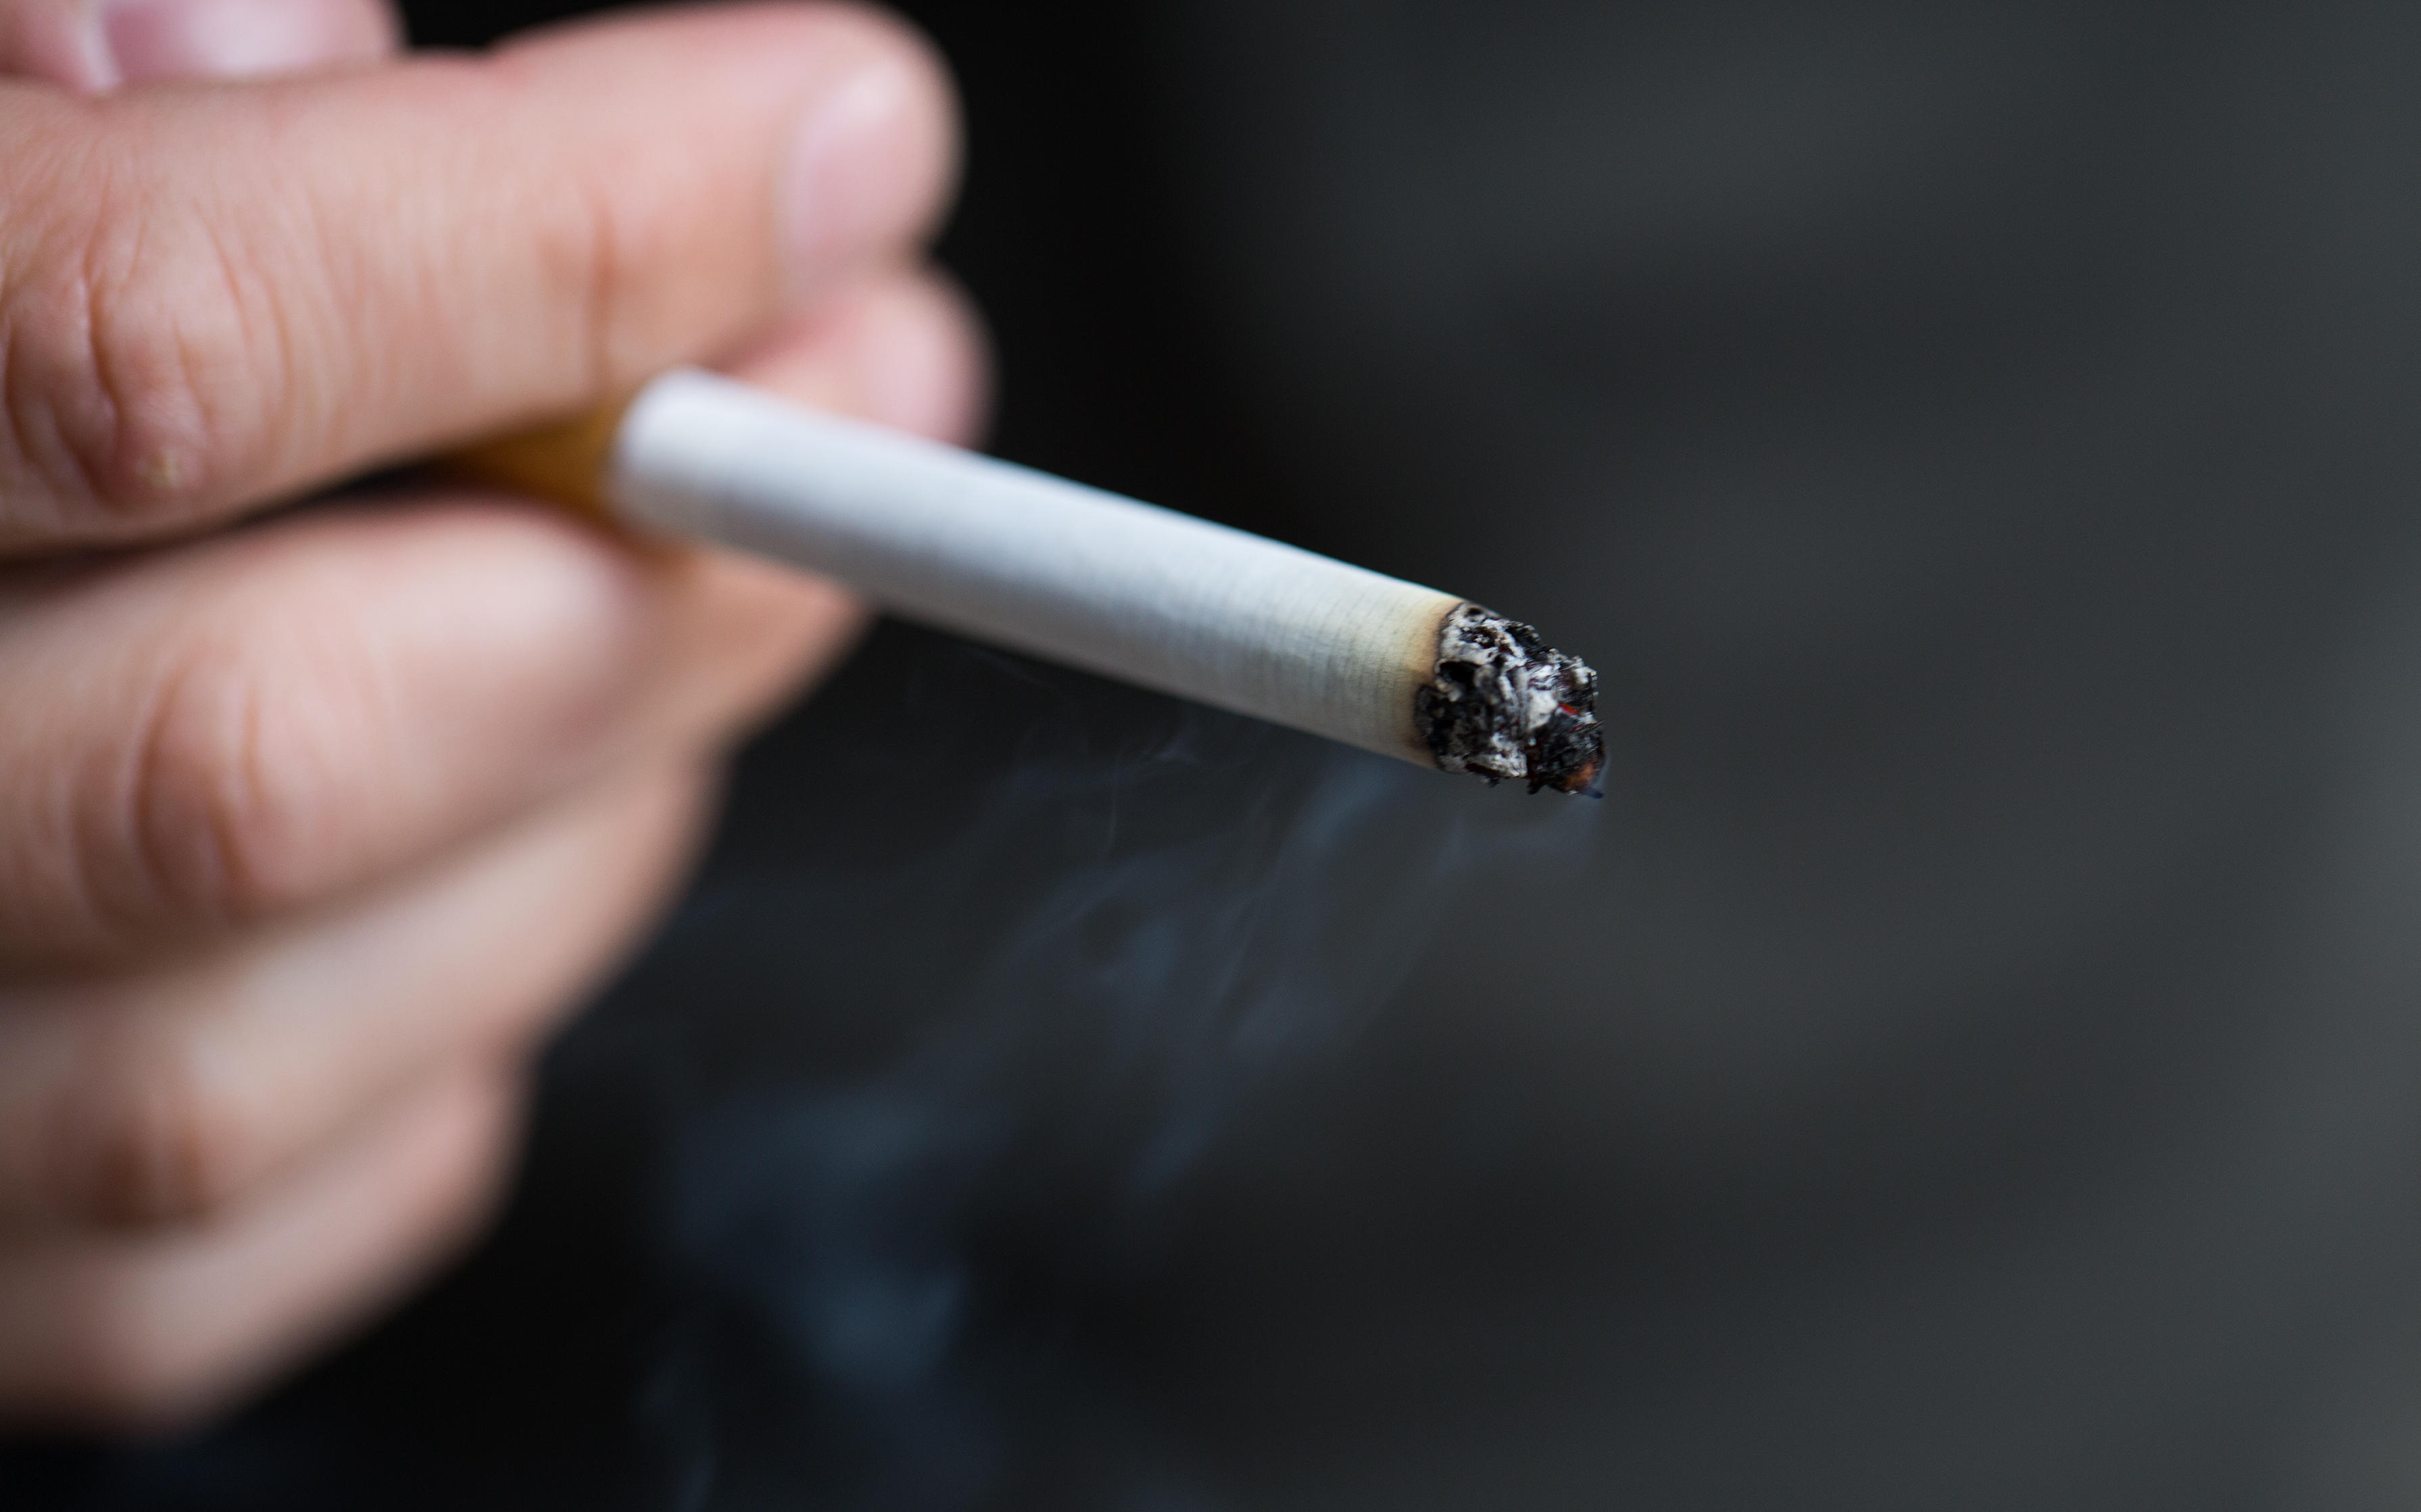 지난해 실질 담배 판매량 0.8% 증가... 담뱃값 인상될까?